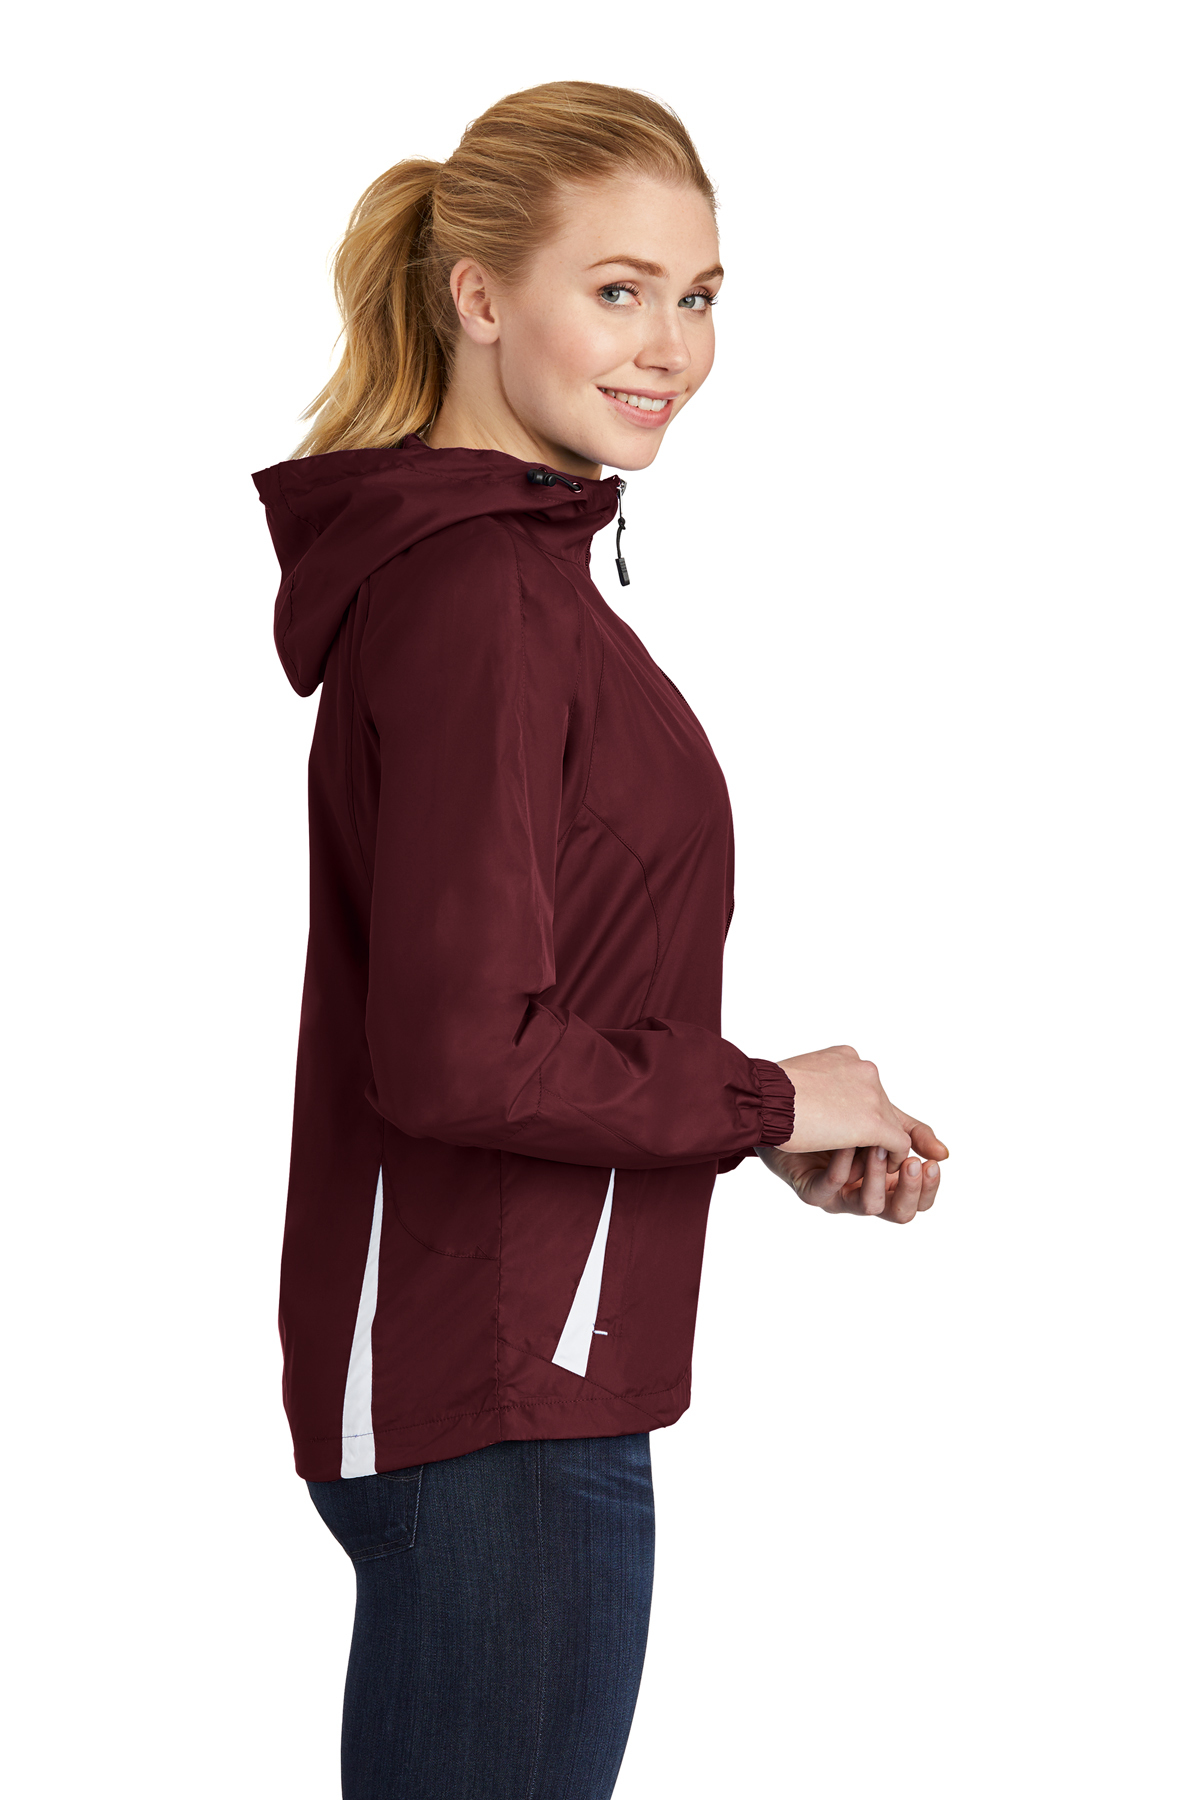 Sport-Tek Ladies Colorblock Hooded Raglan Jacket | Product | Sport-Tek